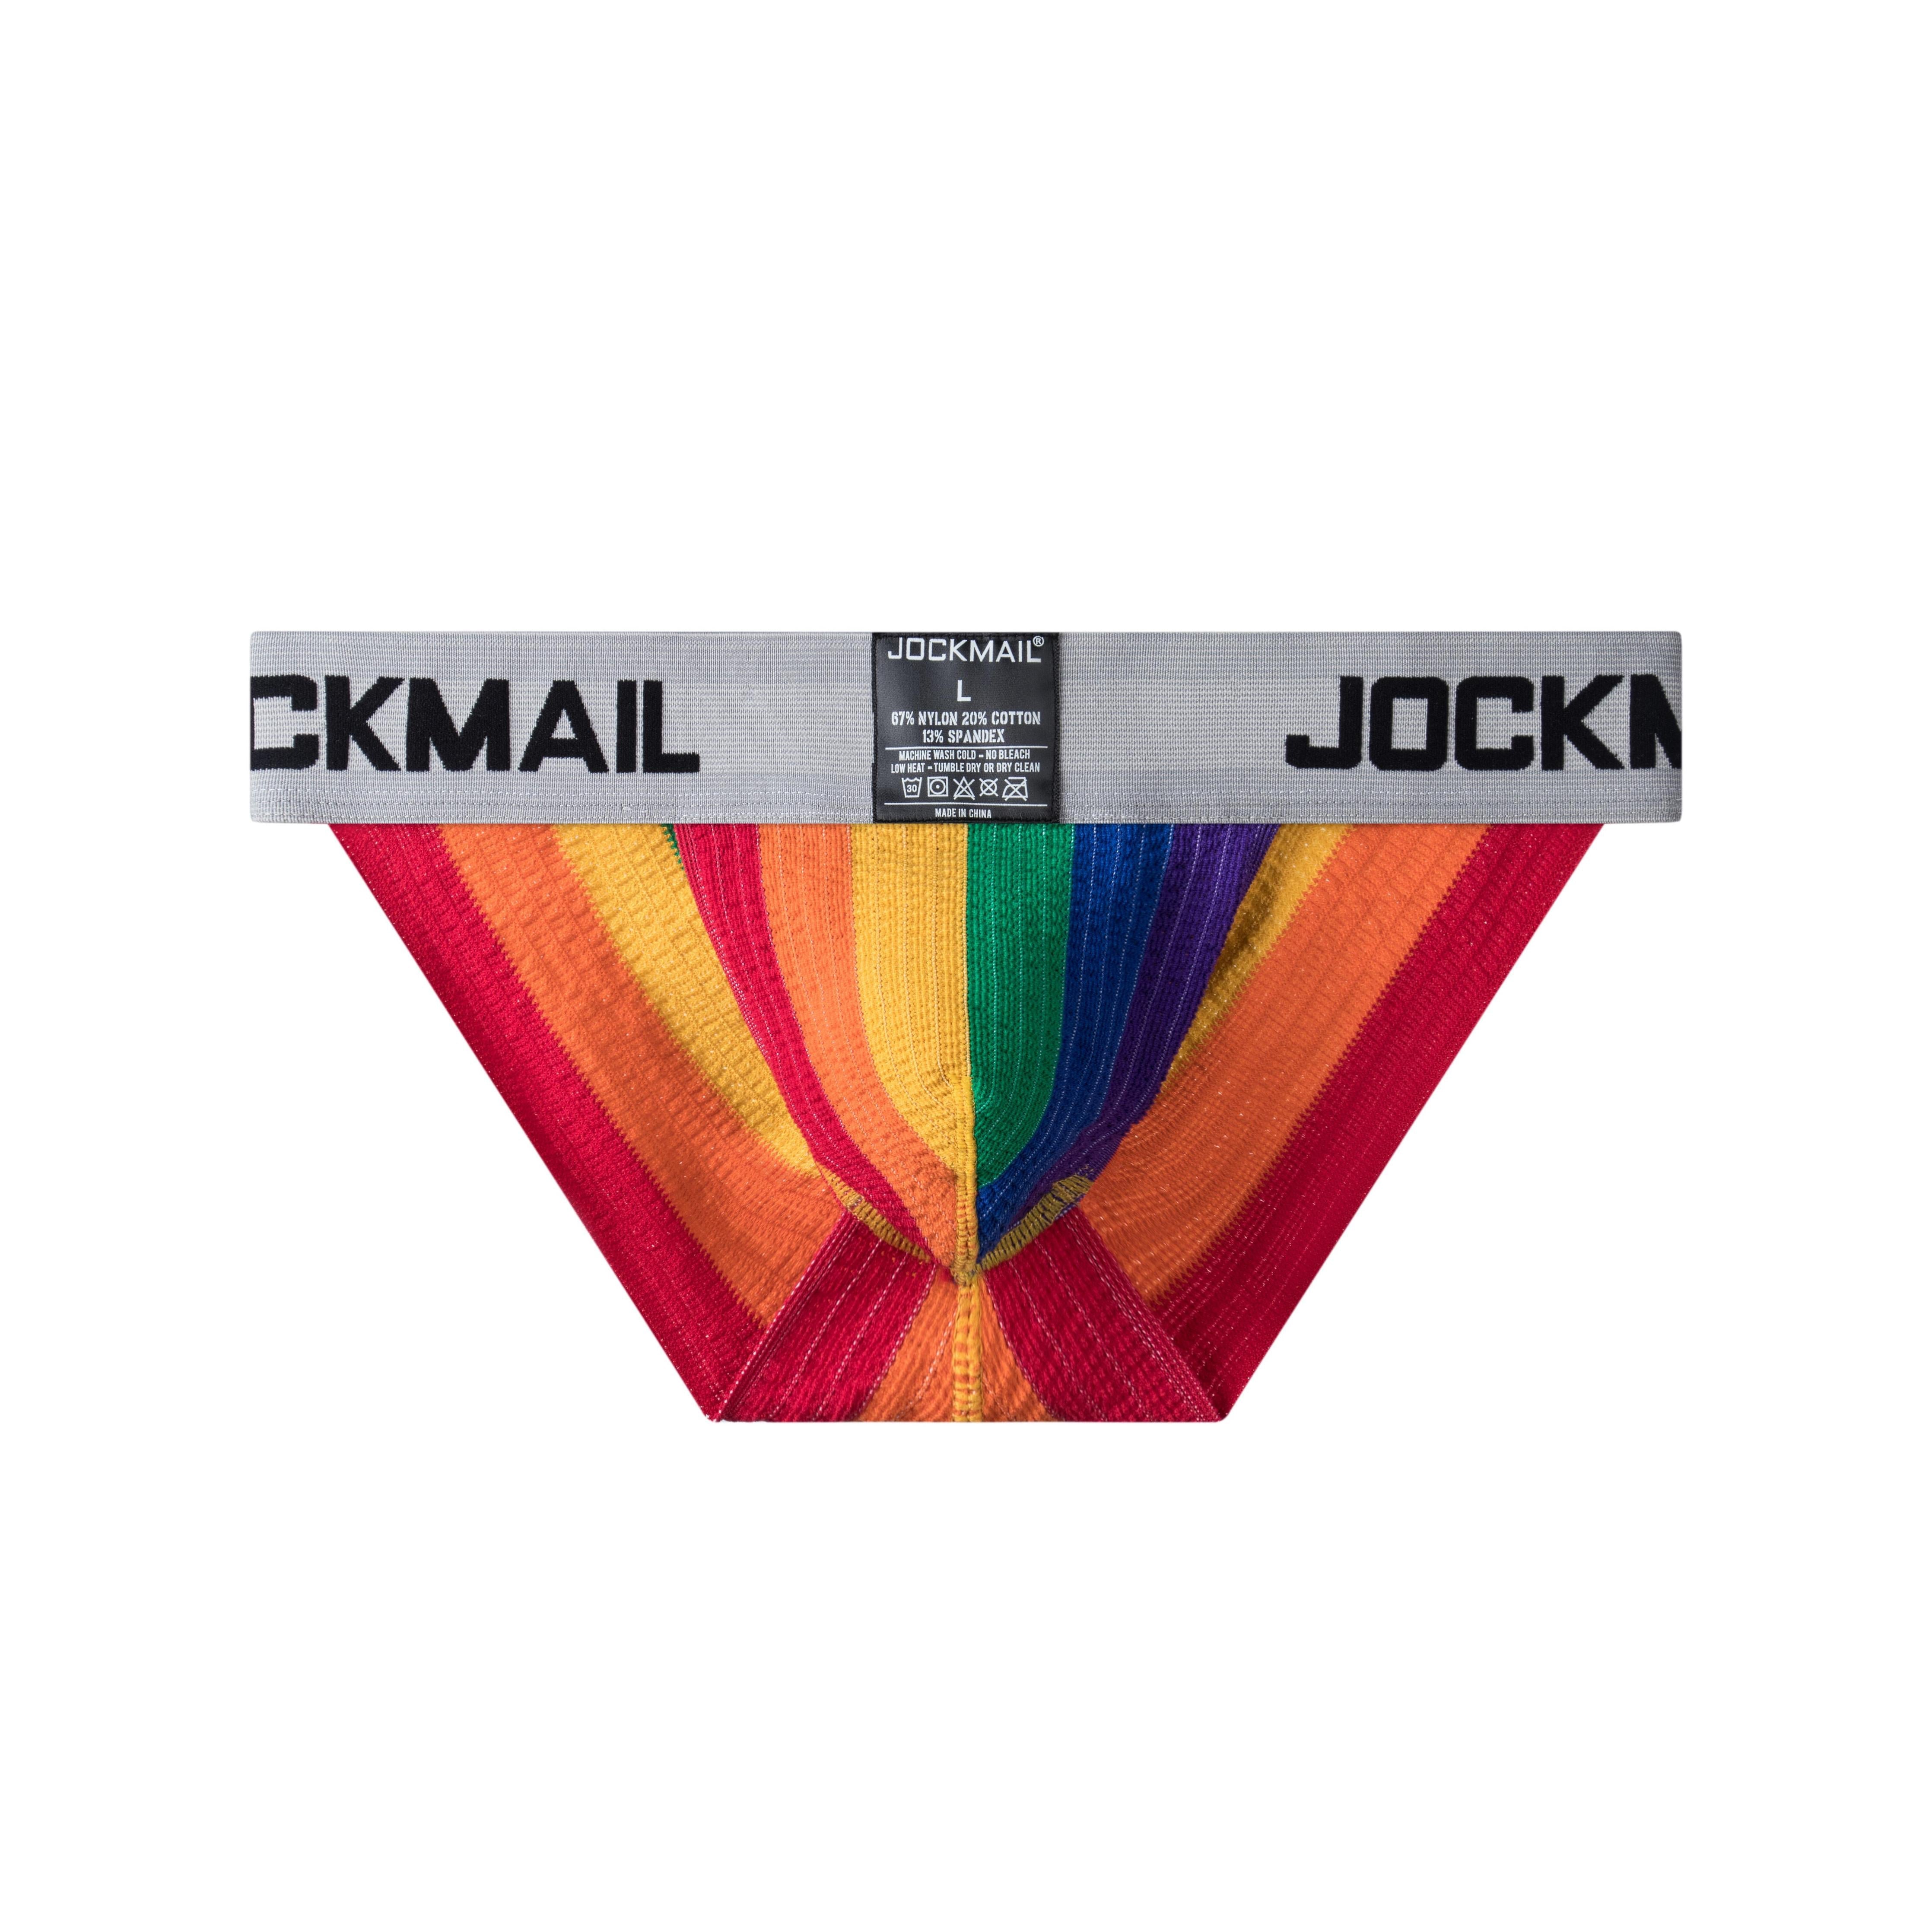 Men's JOCKMAIL JM379 - Old School Brief - JOCKMAIL